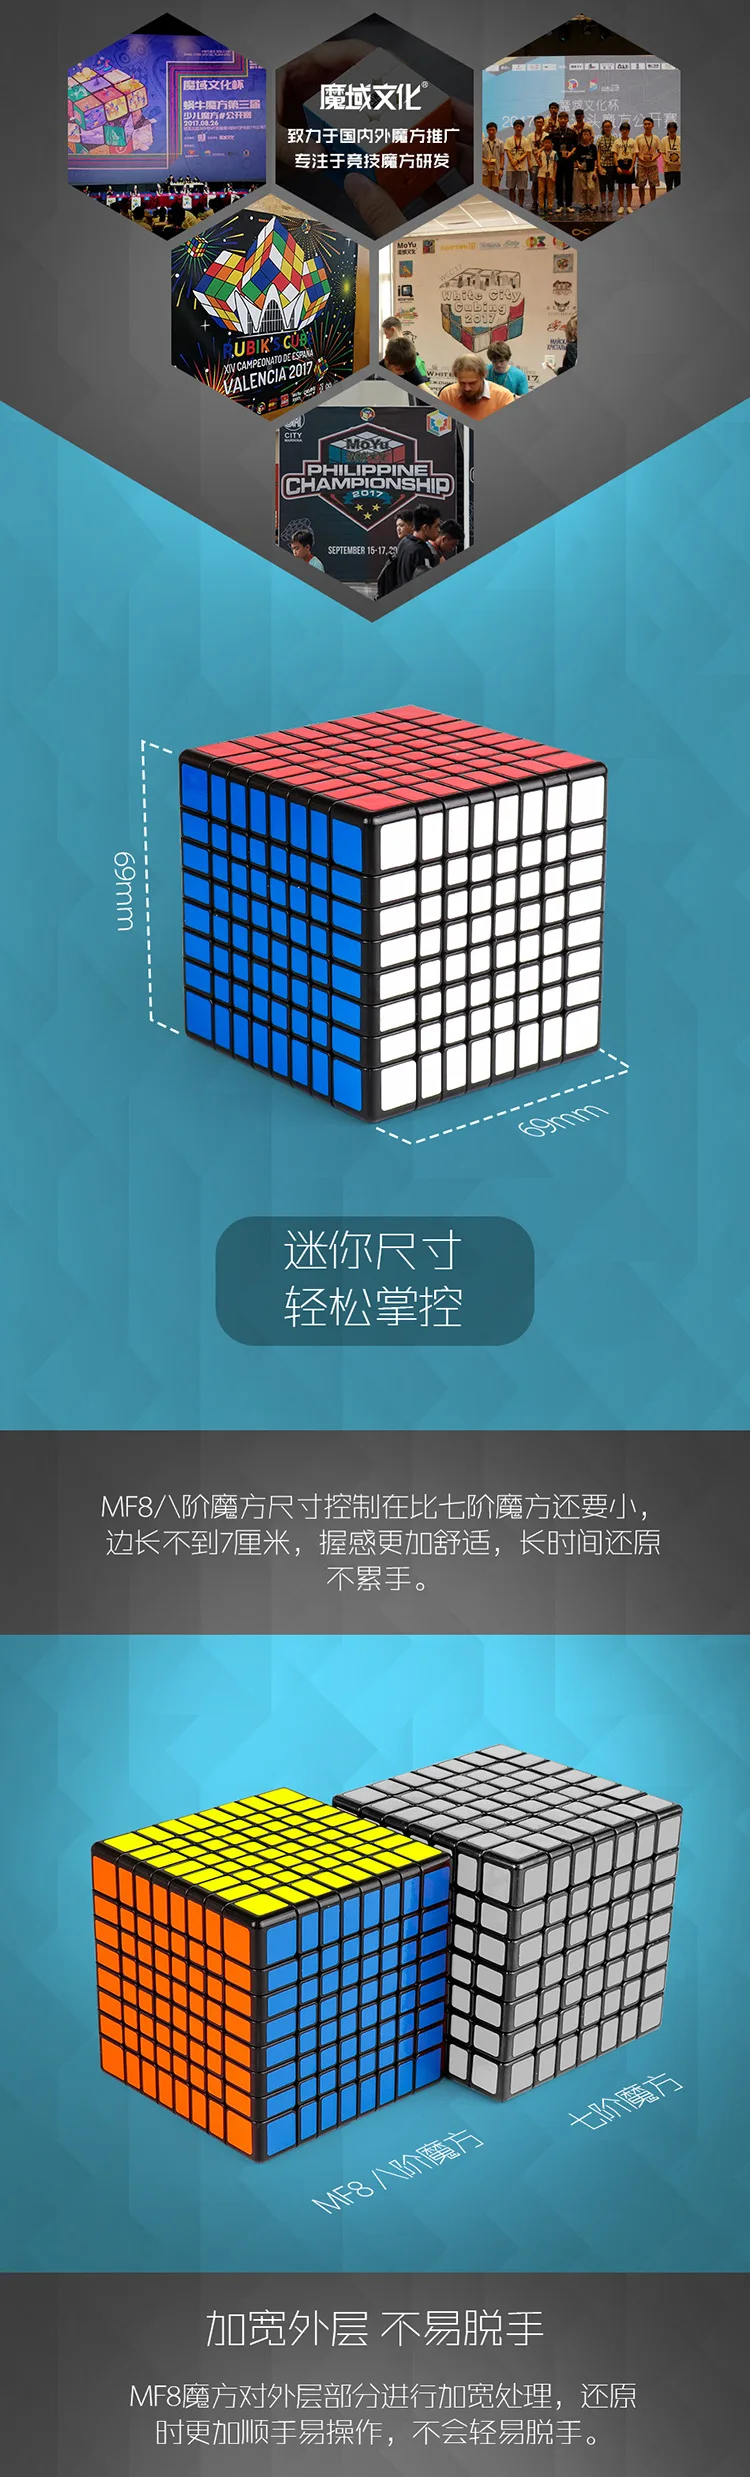 Moyu 8x8x8 7,1 см Профессиональный кубик Magicco скорость Neo куб Cubo Магическая наклейка для взрослых антистресс головоломка подарки игрушки для